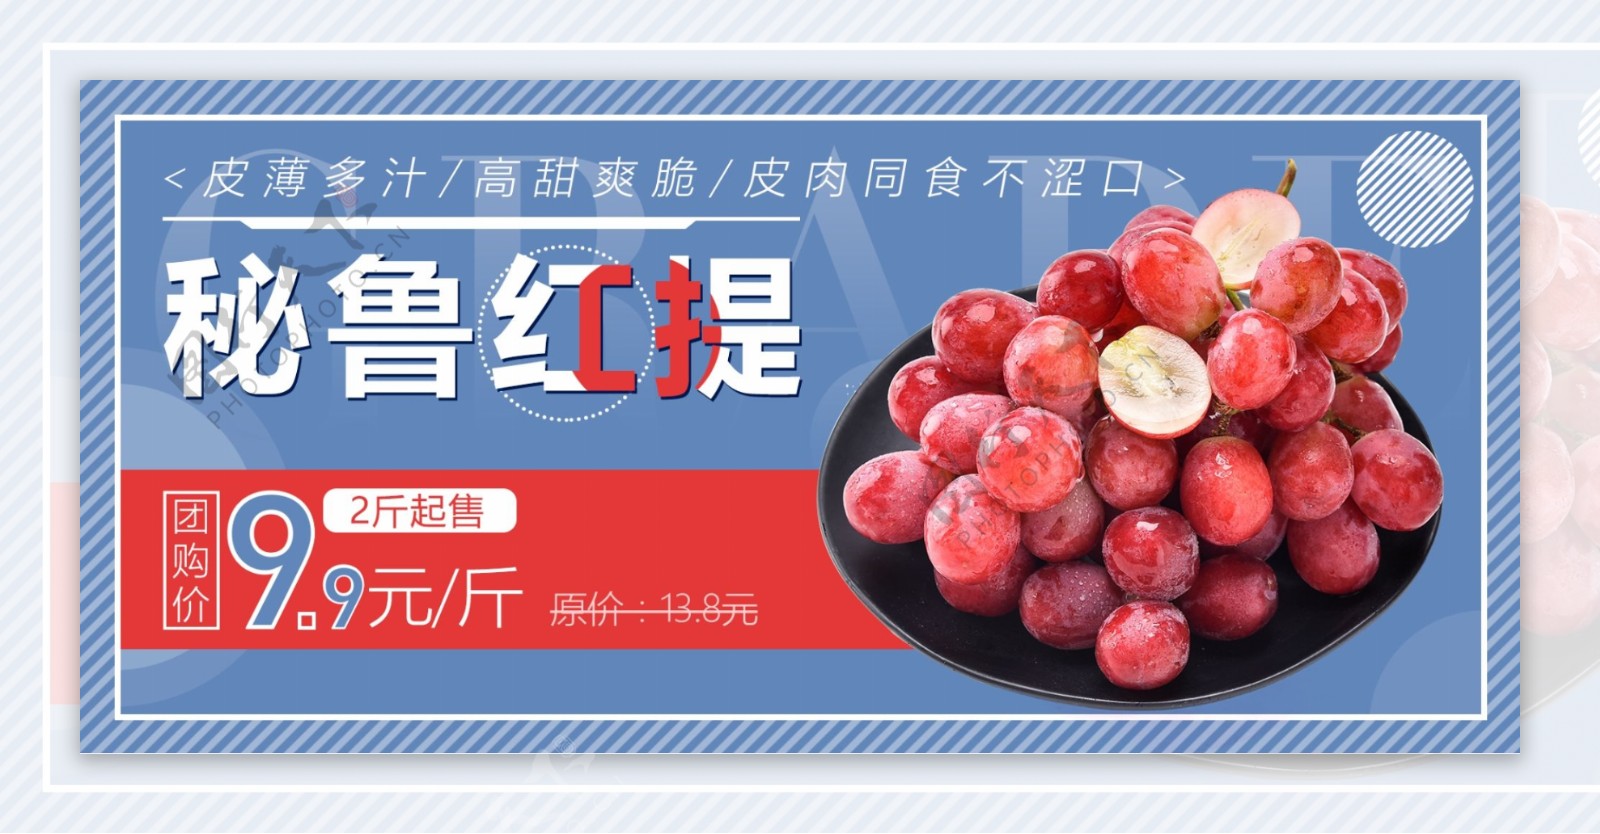 电商淘宝水果美食秘鲁红提全屏促销海报